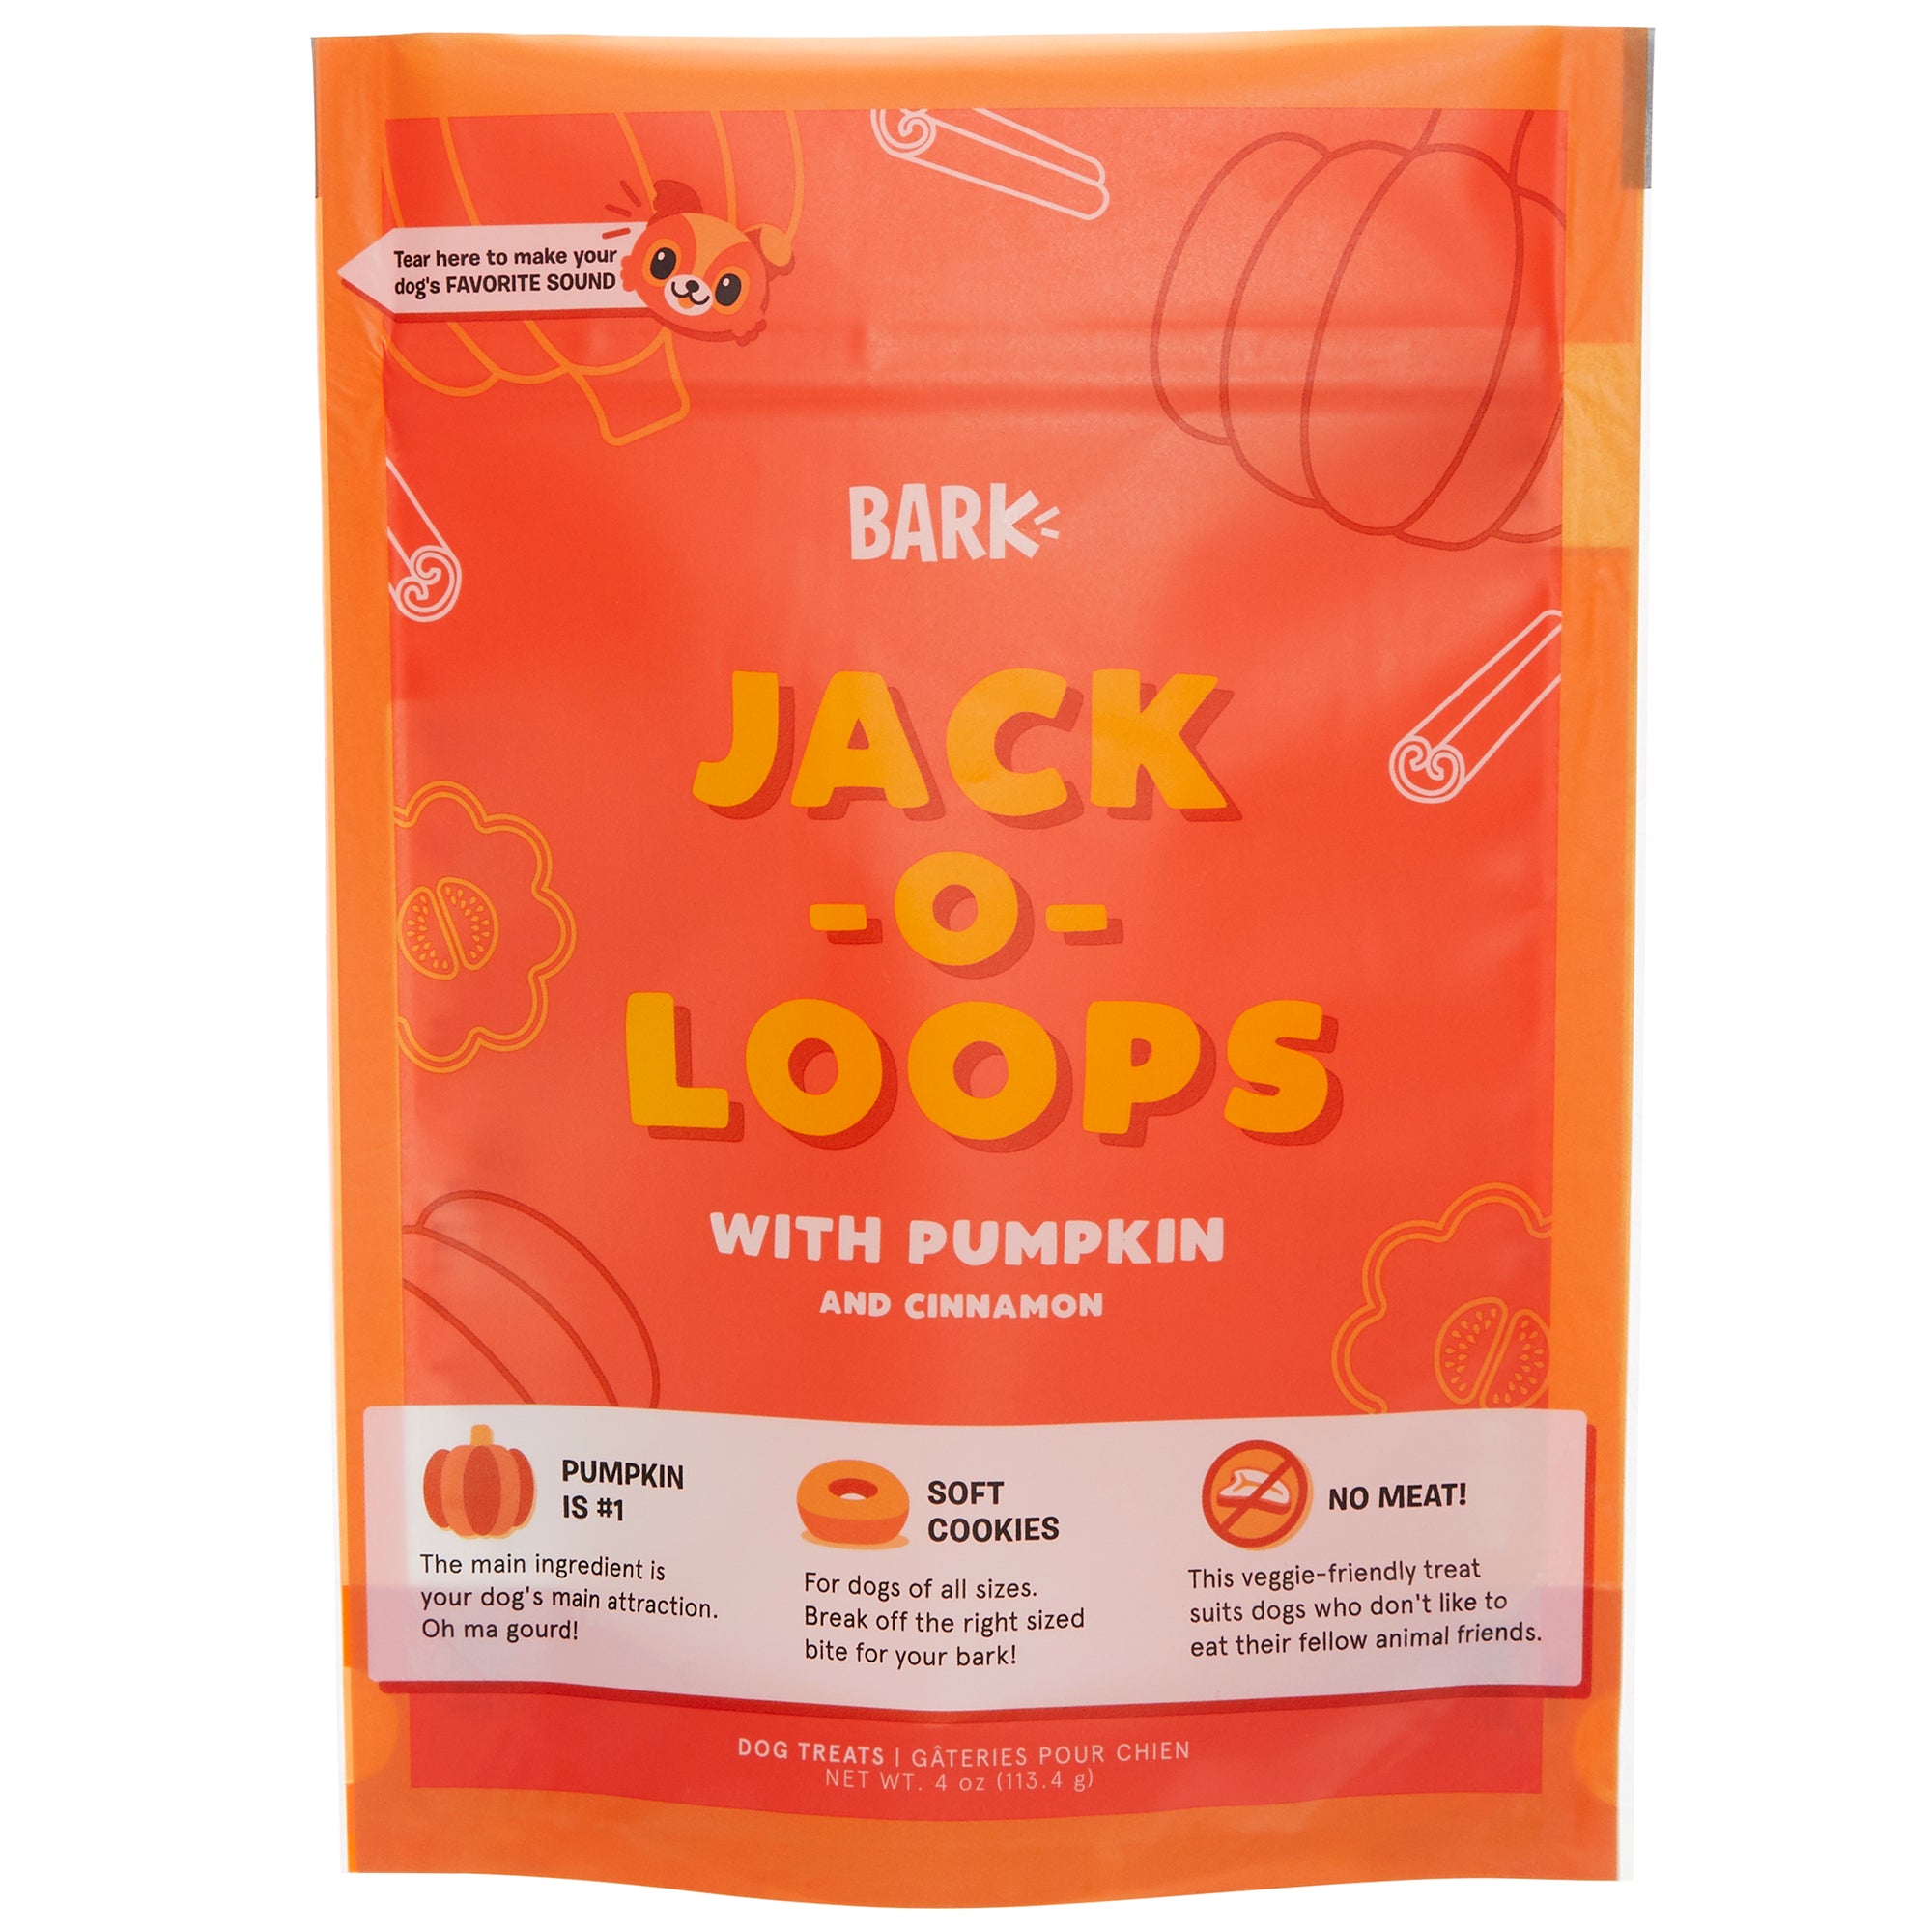 Jack-o-Loops